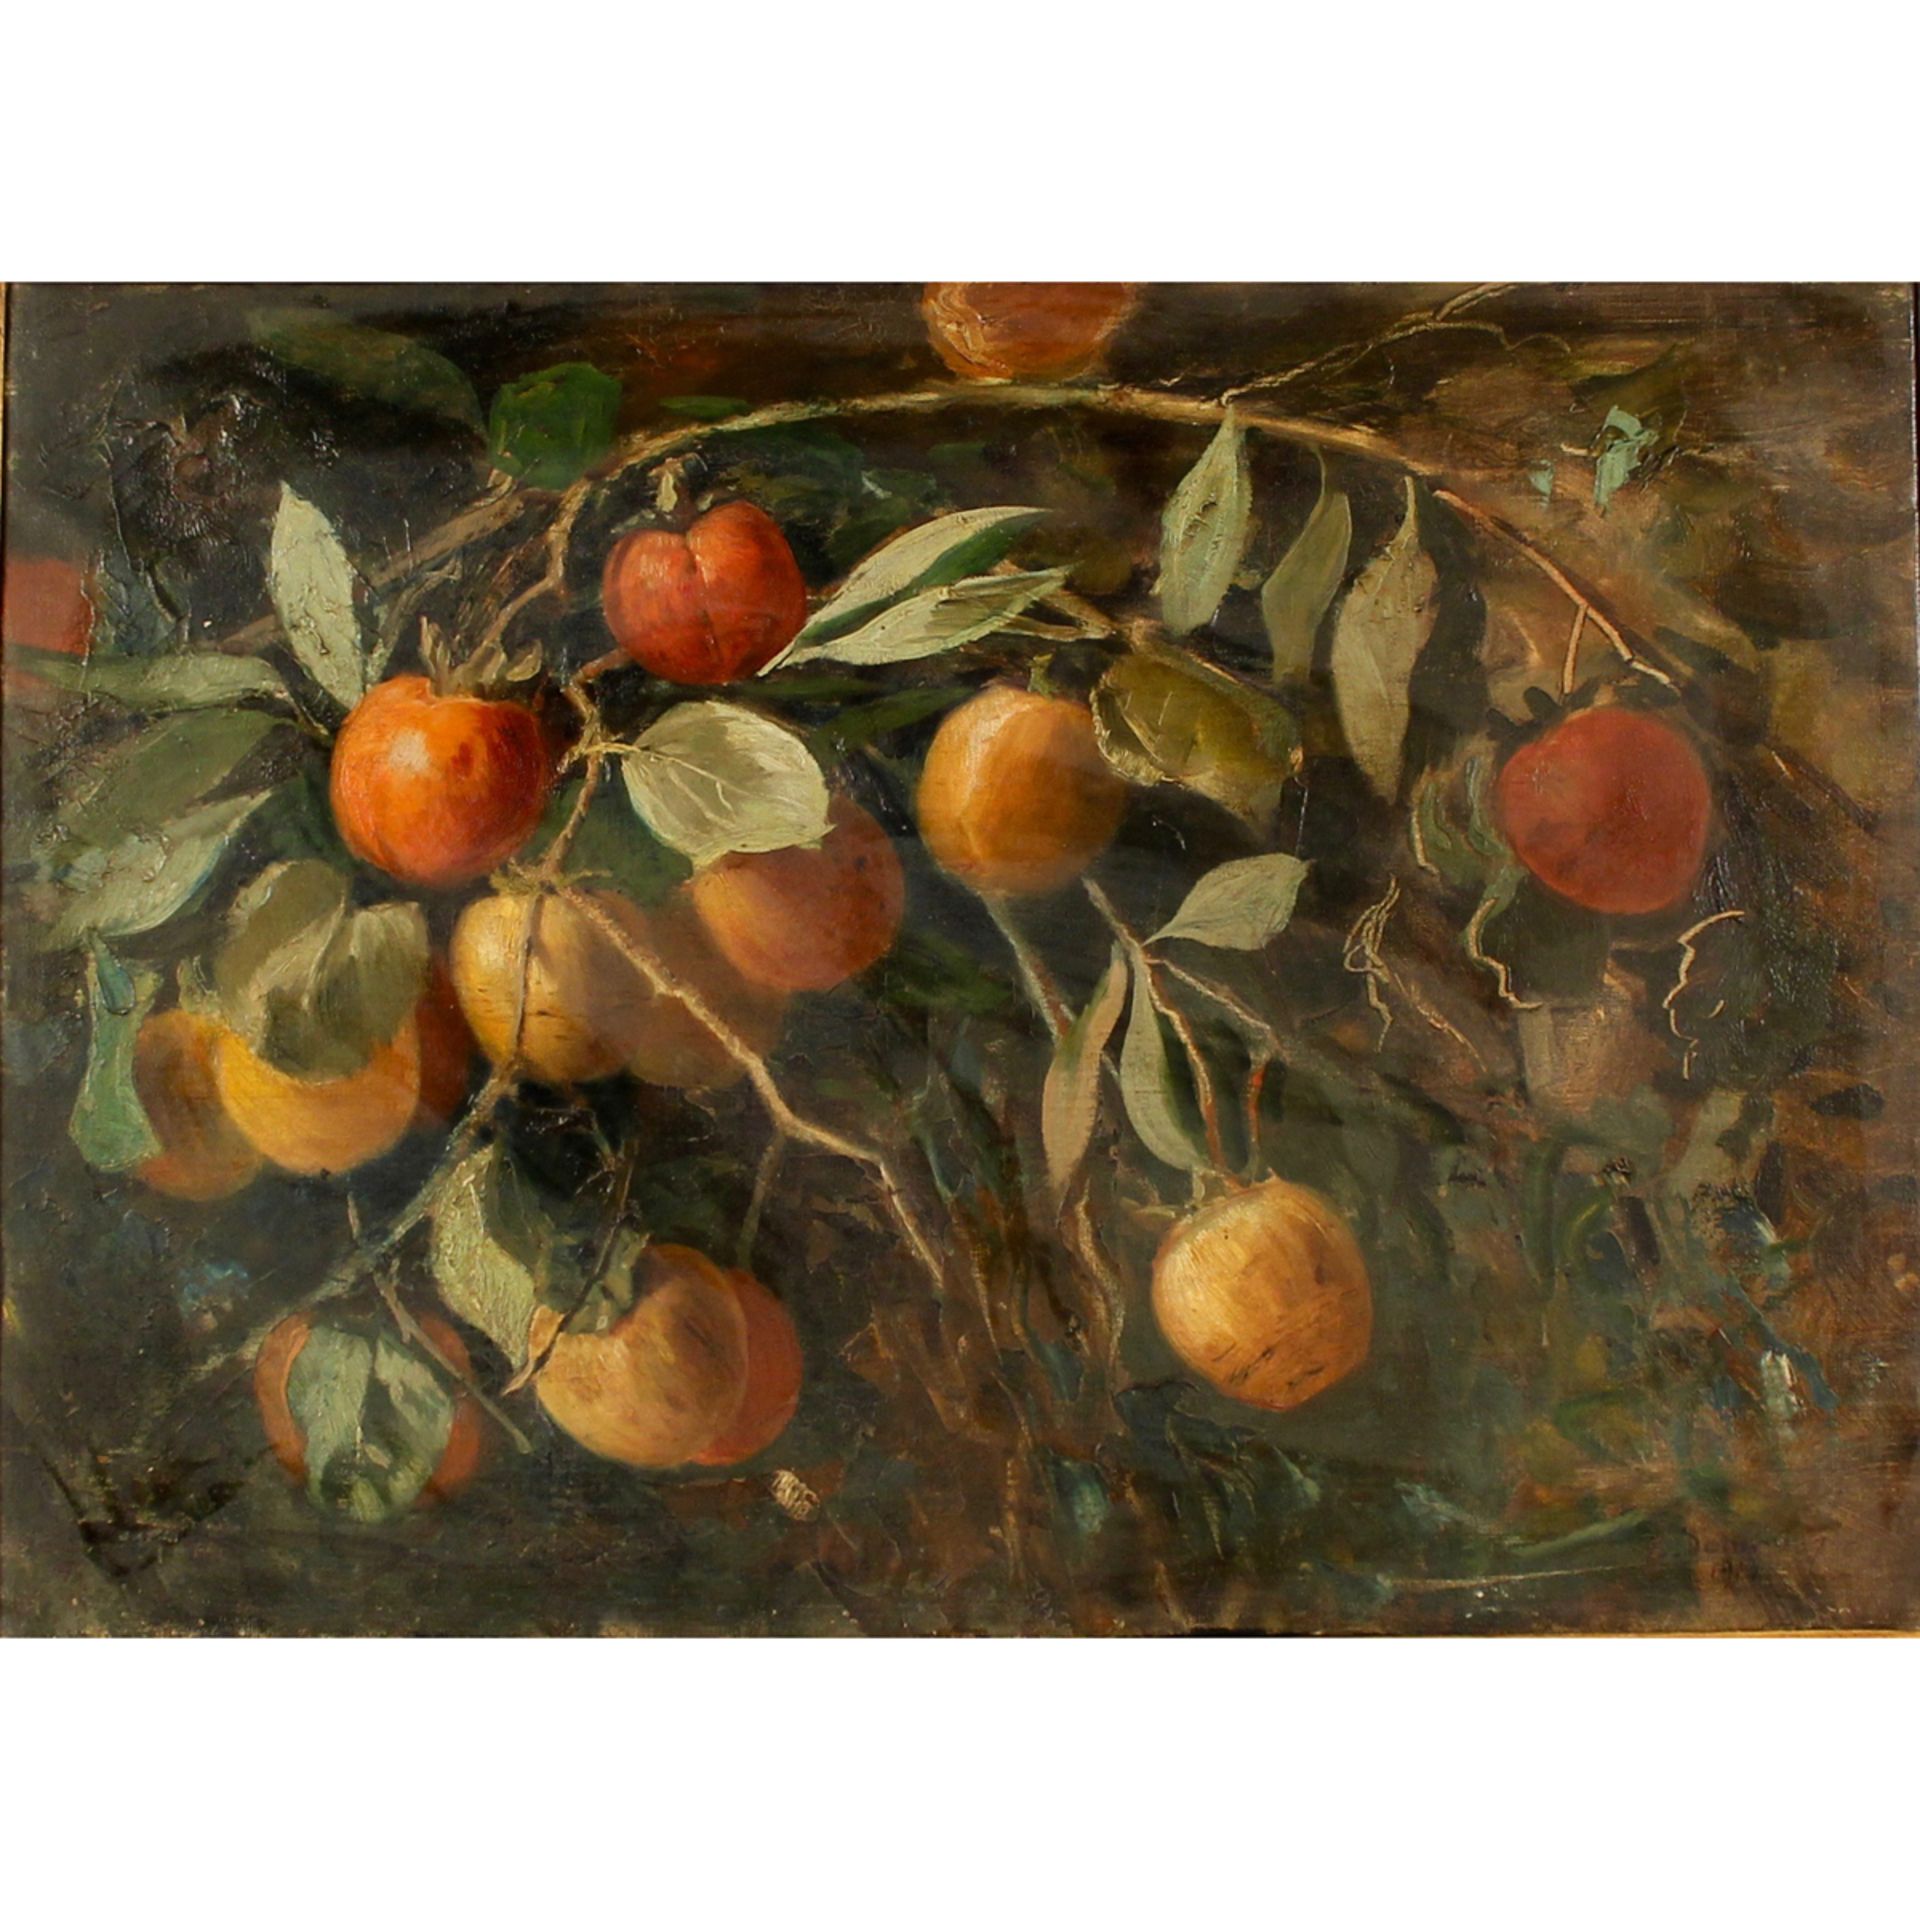 ETTORE DE MARIA BERGLER (1850/1938) "Rami con pesche" - "Branches with peaches"